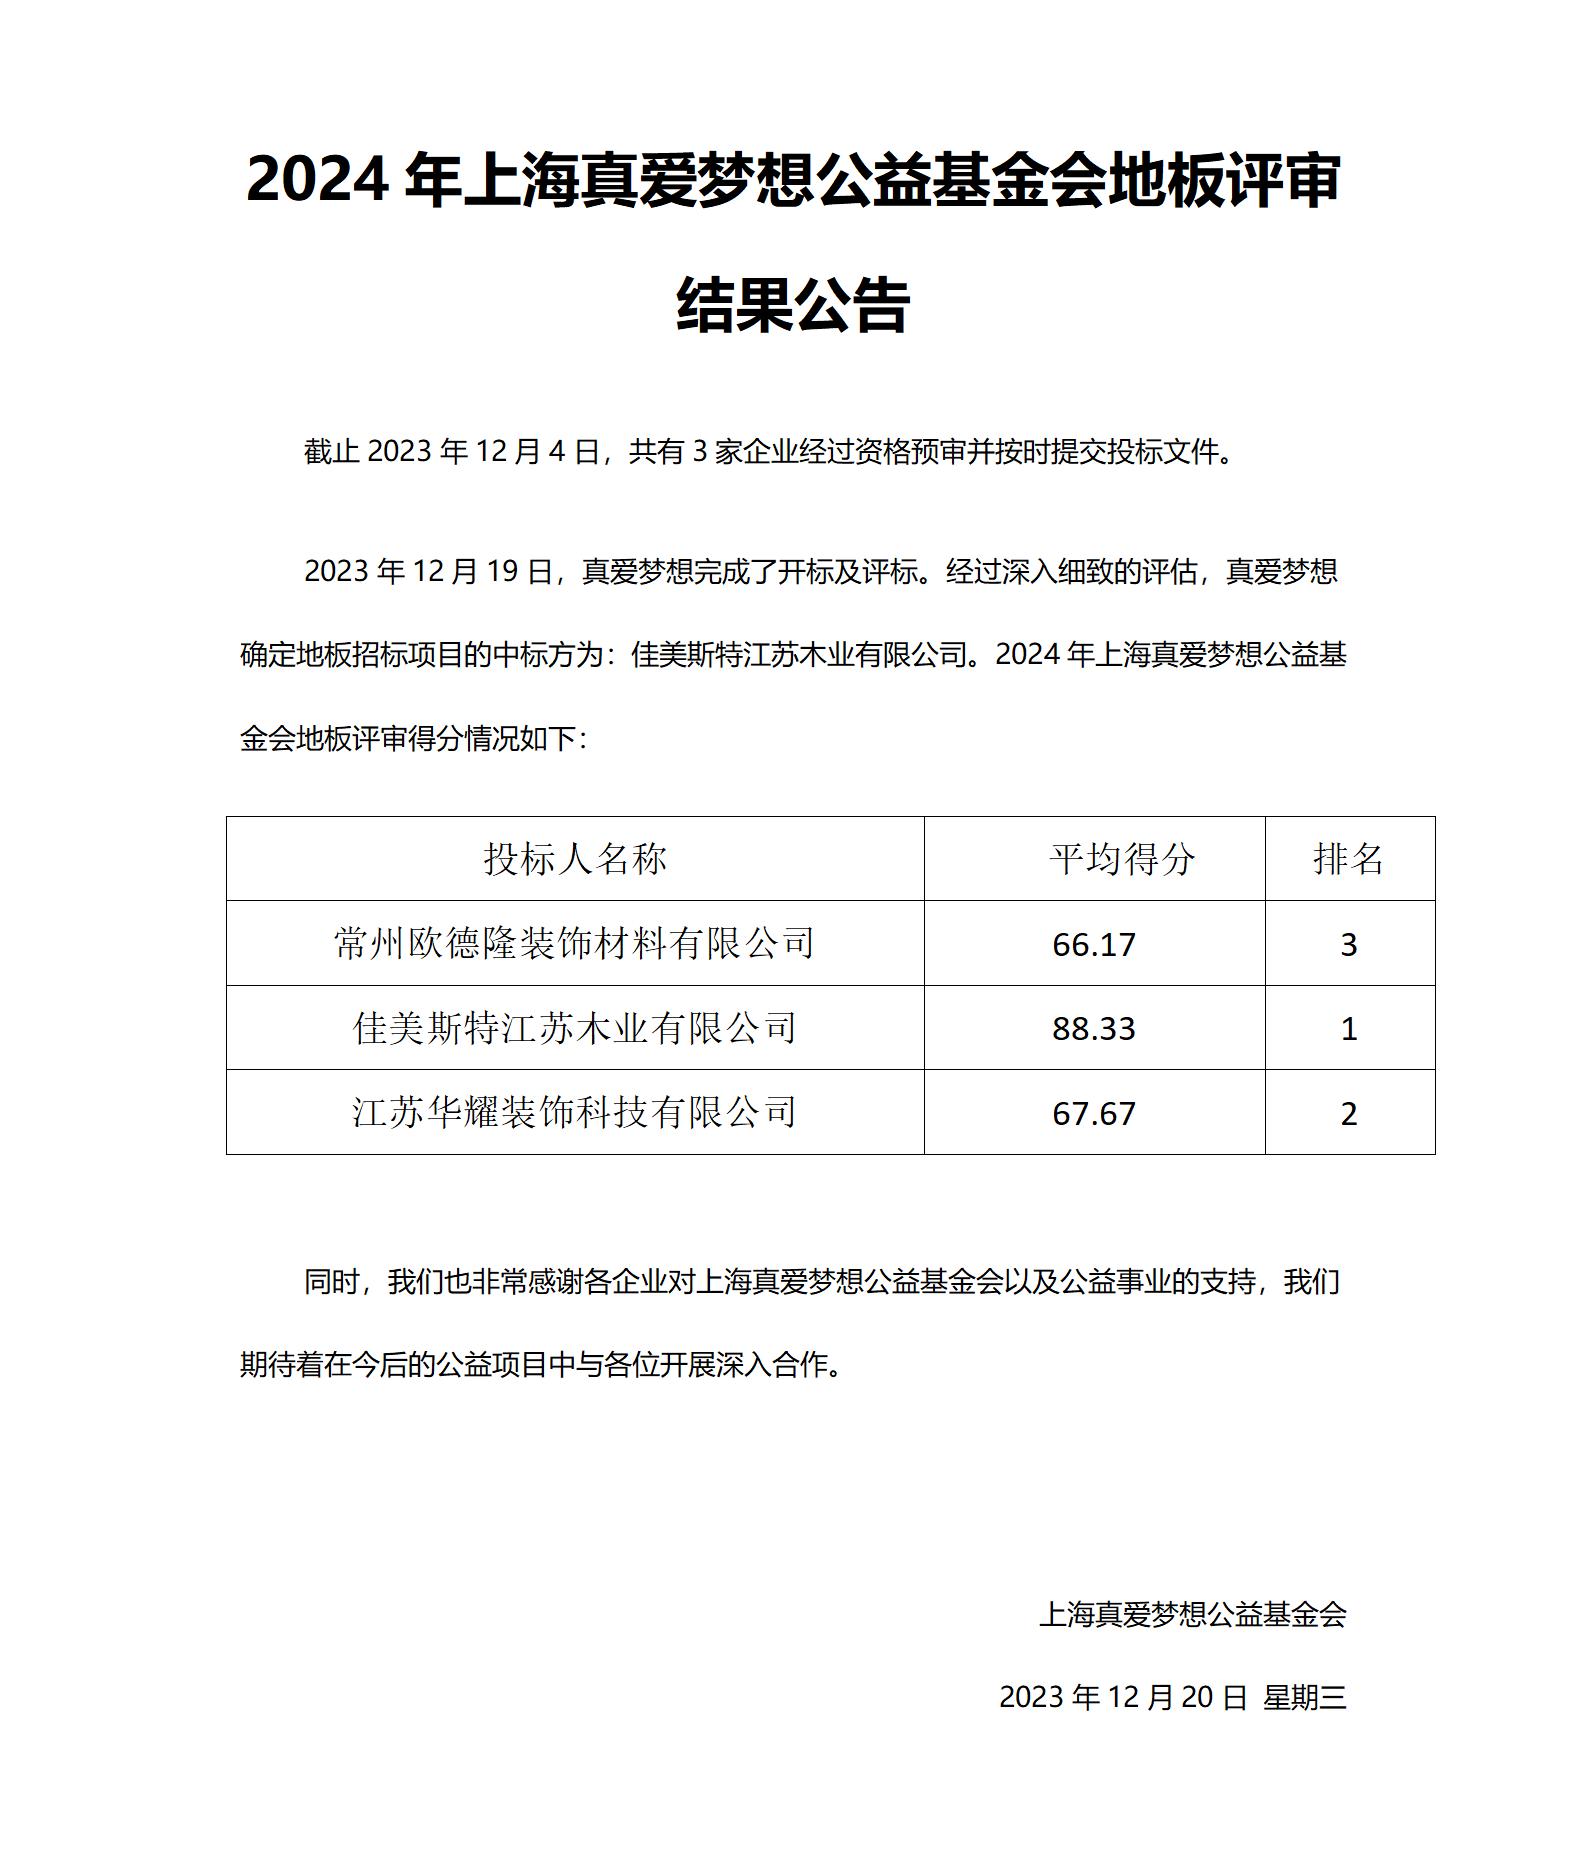 附件1采购招标结果公告-2024年上海真爱梦想公益基金会地板评标_01